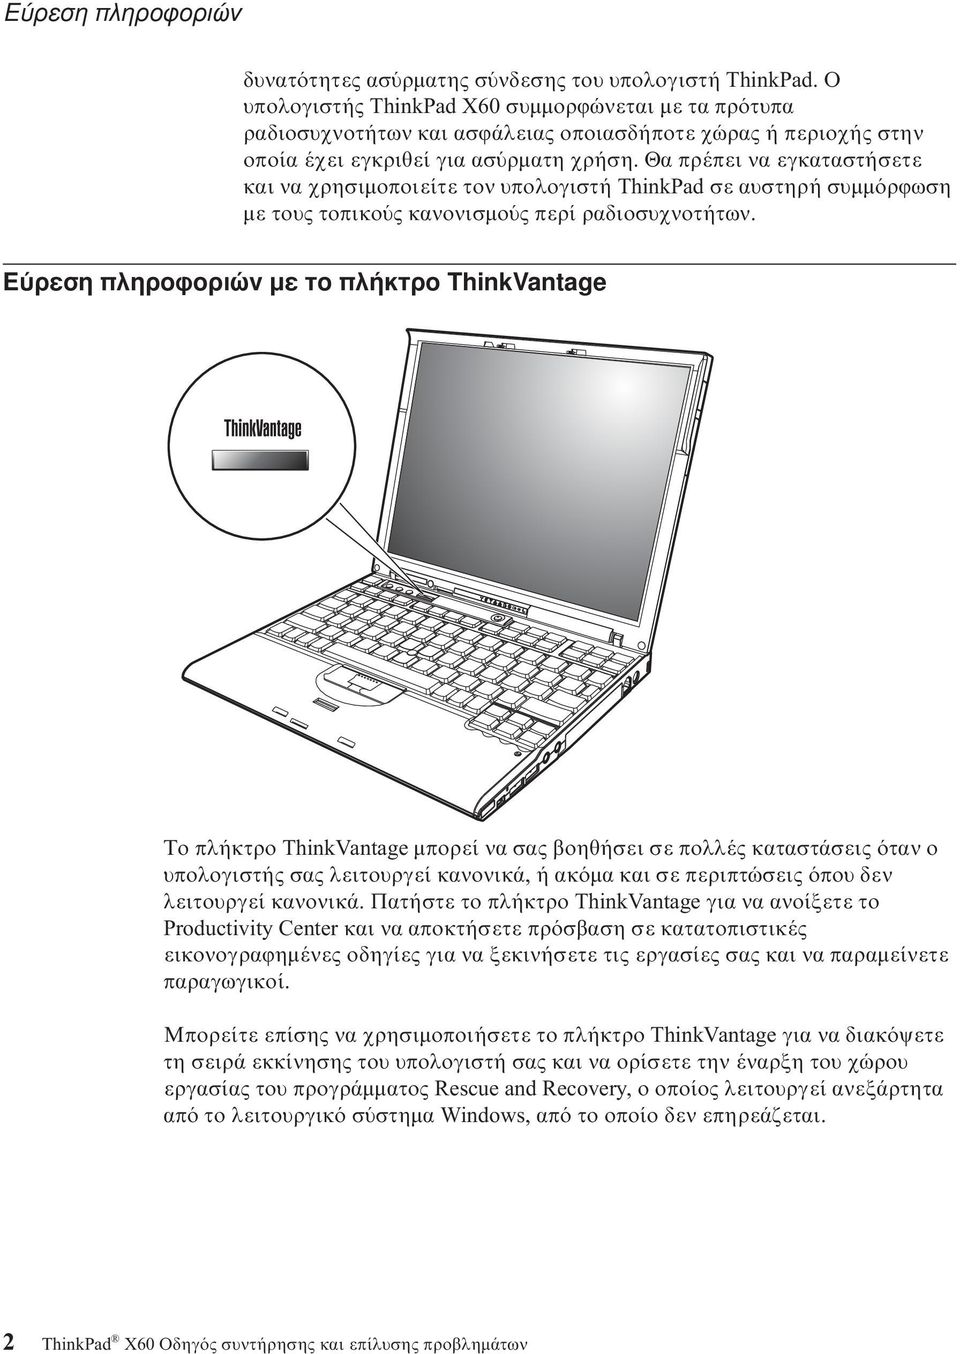 Θα πρέπει να εγκαταστήσετε και να χρησιµοποιείτε τον υπολογιστή ThinkPad σε αυστηρή συµµ ρϕωση µε τους τοπικο ς κανονισµο ς περί ραδιοσυχνοτήτων.